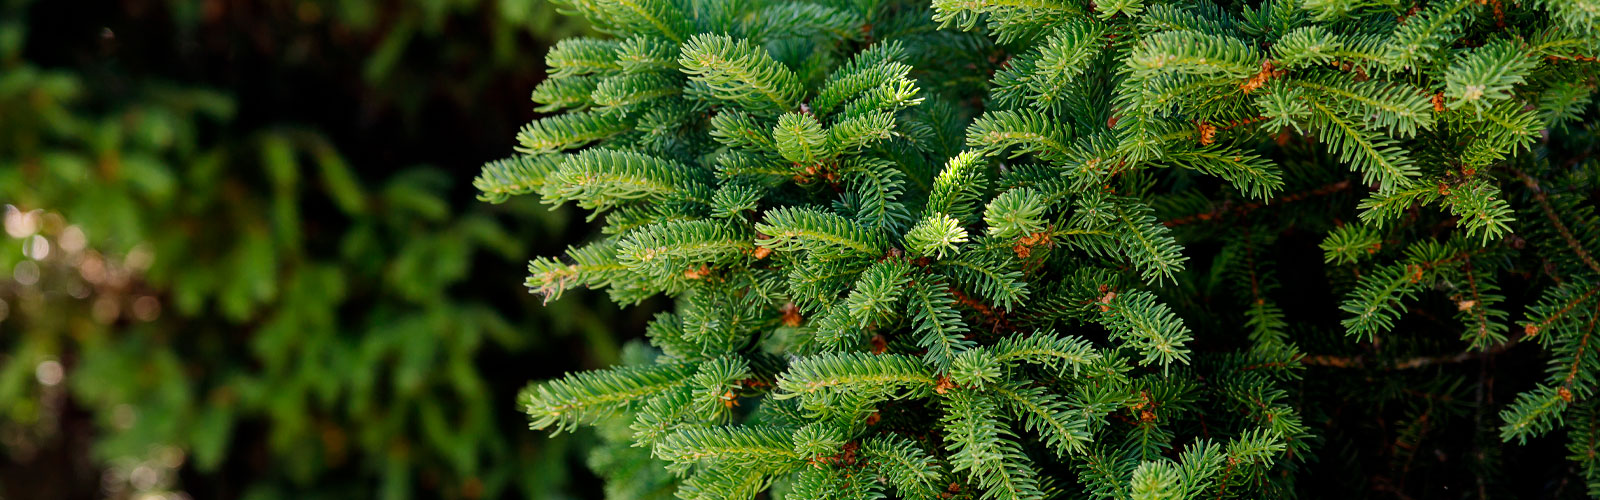 tanne-baum-fichte-kiefer-weihnachtsbaum-äste-greifswald-bäume-entsorgen